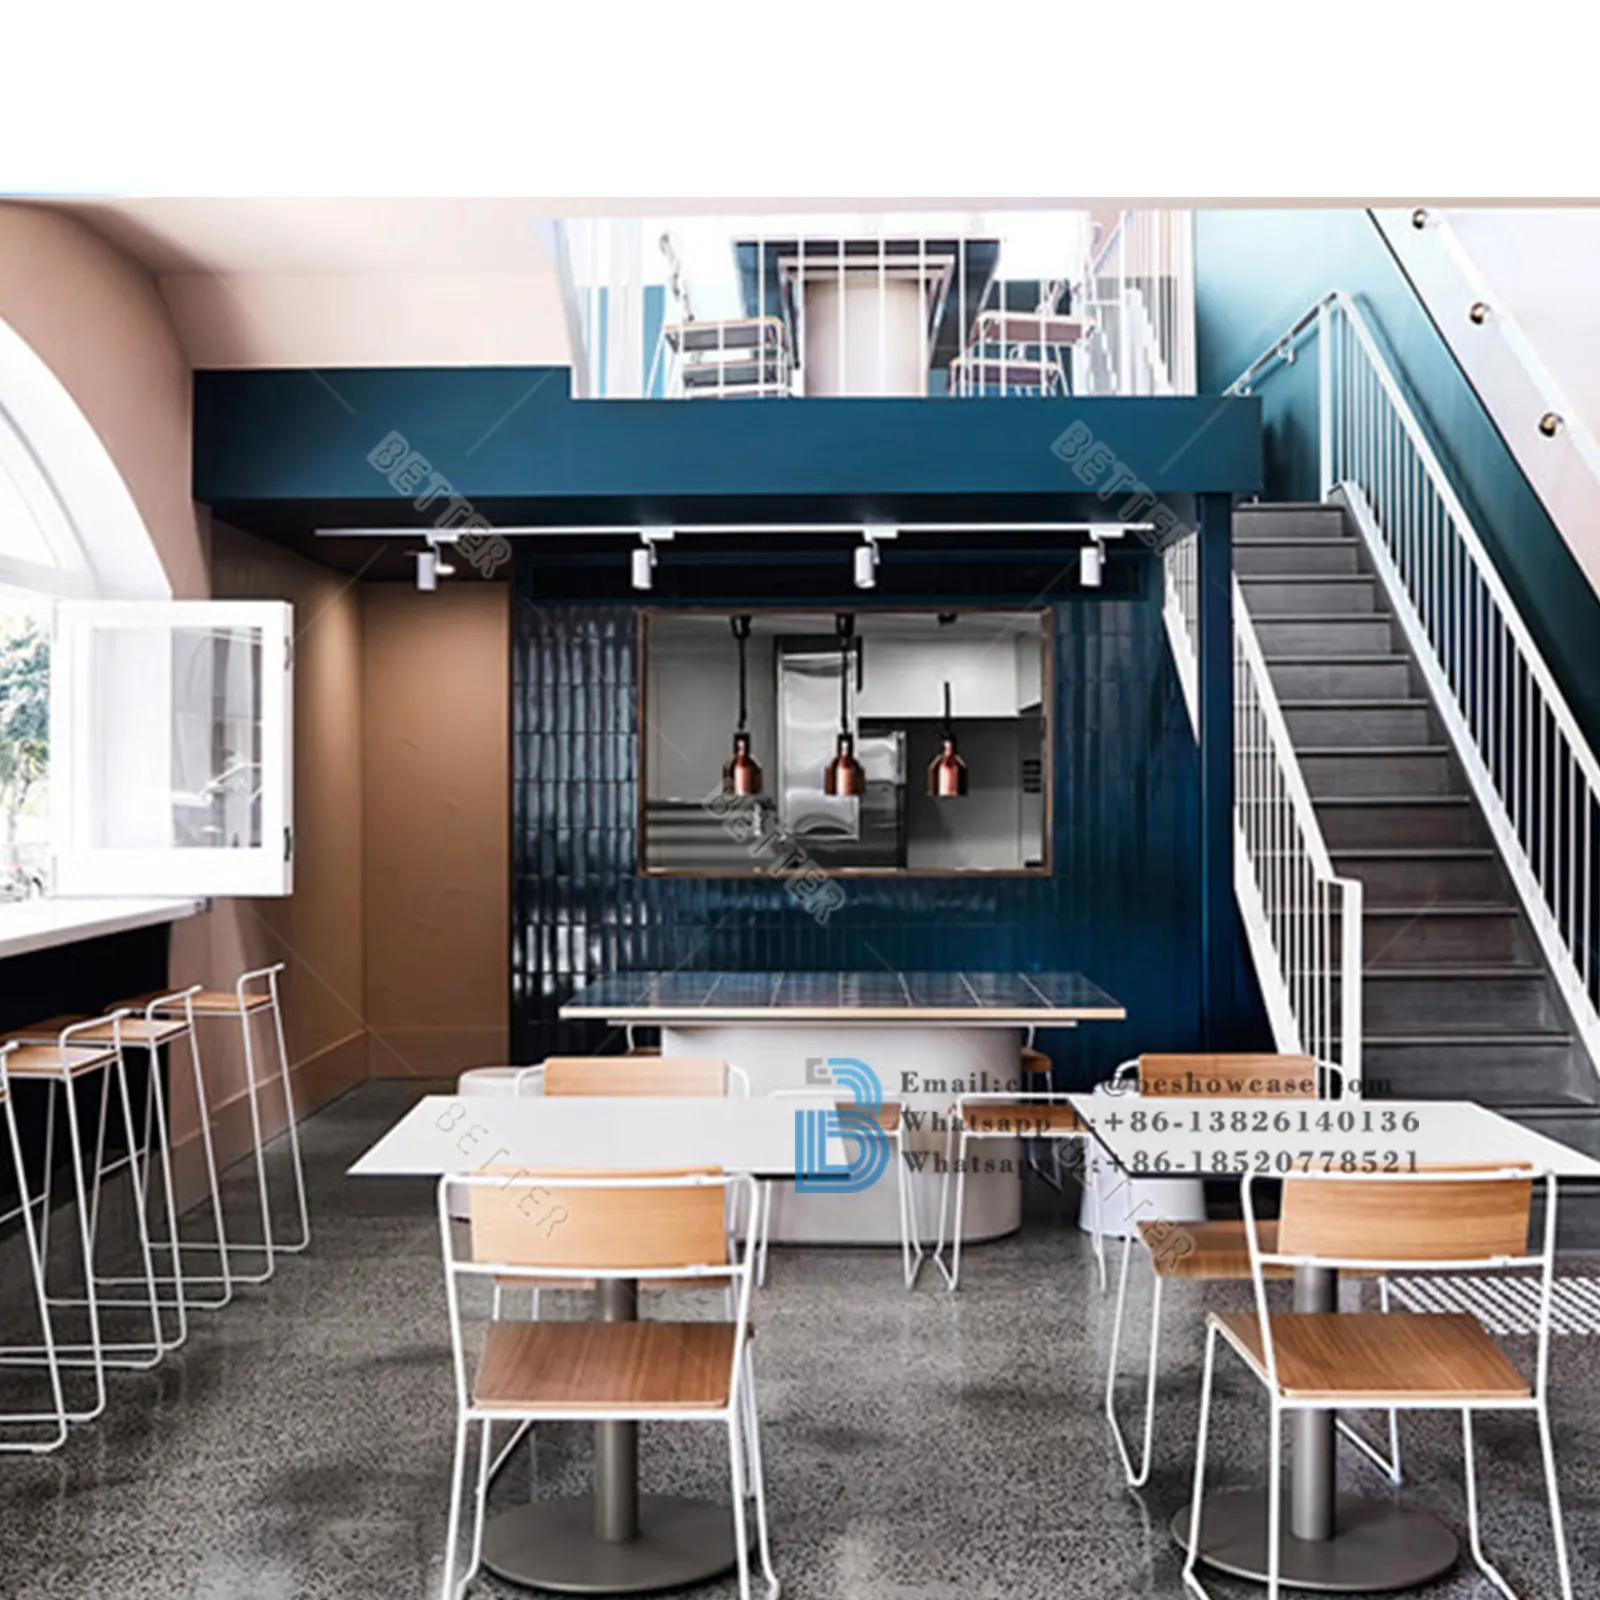 Barra de café de diseño moderno Mostrador de barra de exhibición interior Té de burbujas Café Tienda de bebidas Muebles con equipo